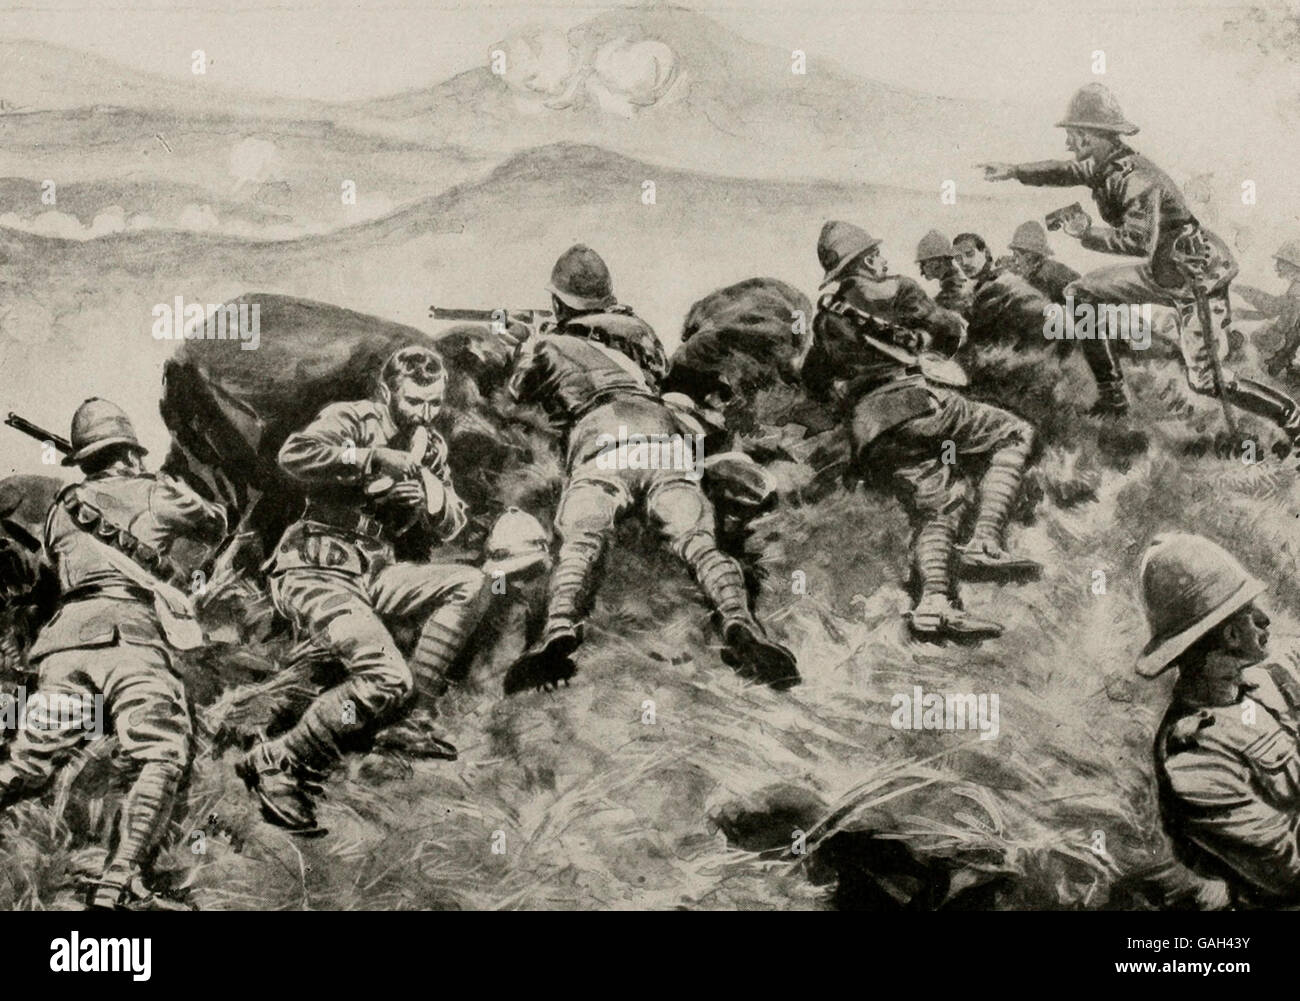 Británicos y alemanes combatiendo en África. Una lucha desesperada, en las cercanías del Monte Kilimanjaro en el África Oriental Británica durante la Primera Guerra Mundial Foto de stock